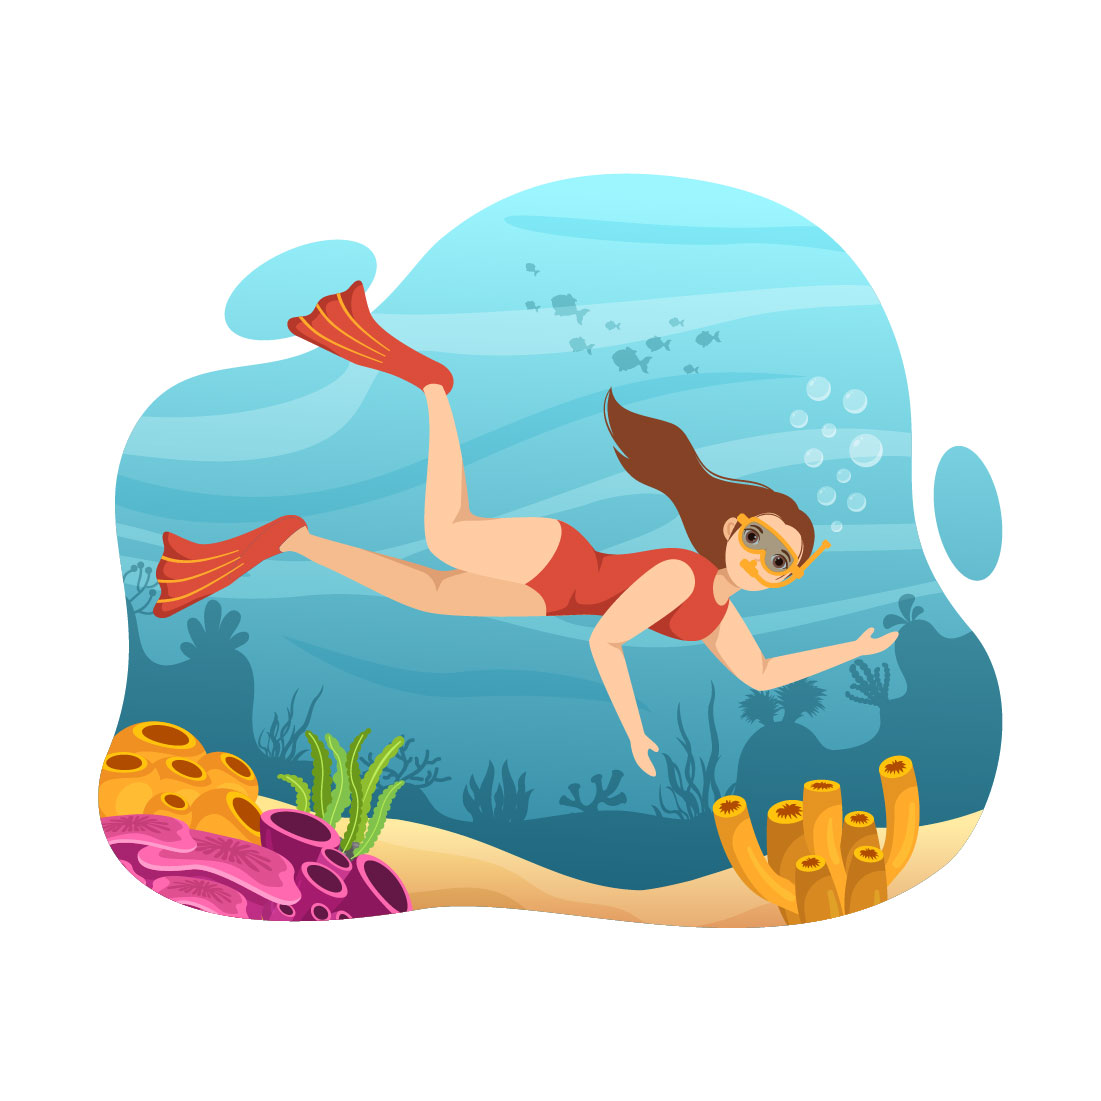 10 Snorkeling Design Illustration cover image.